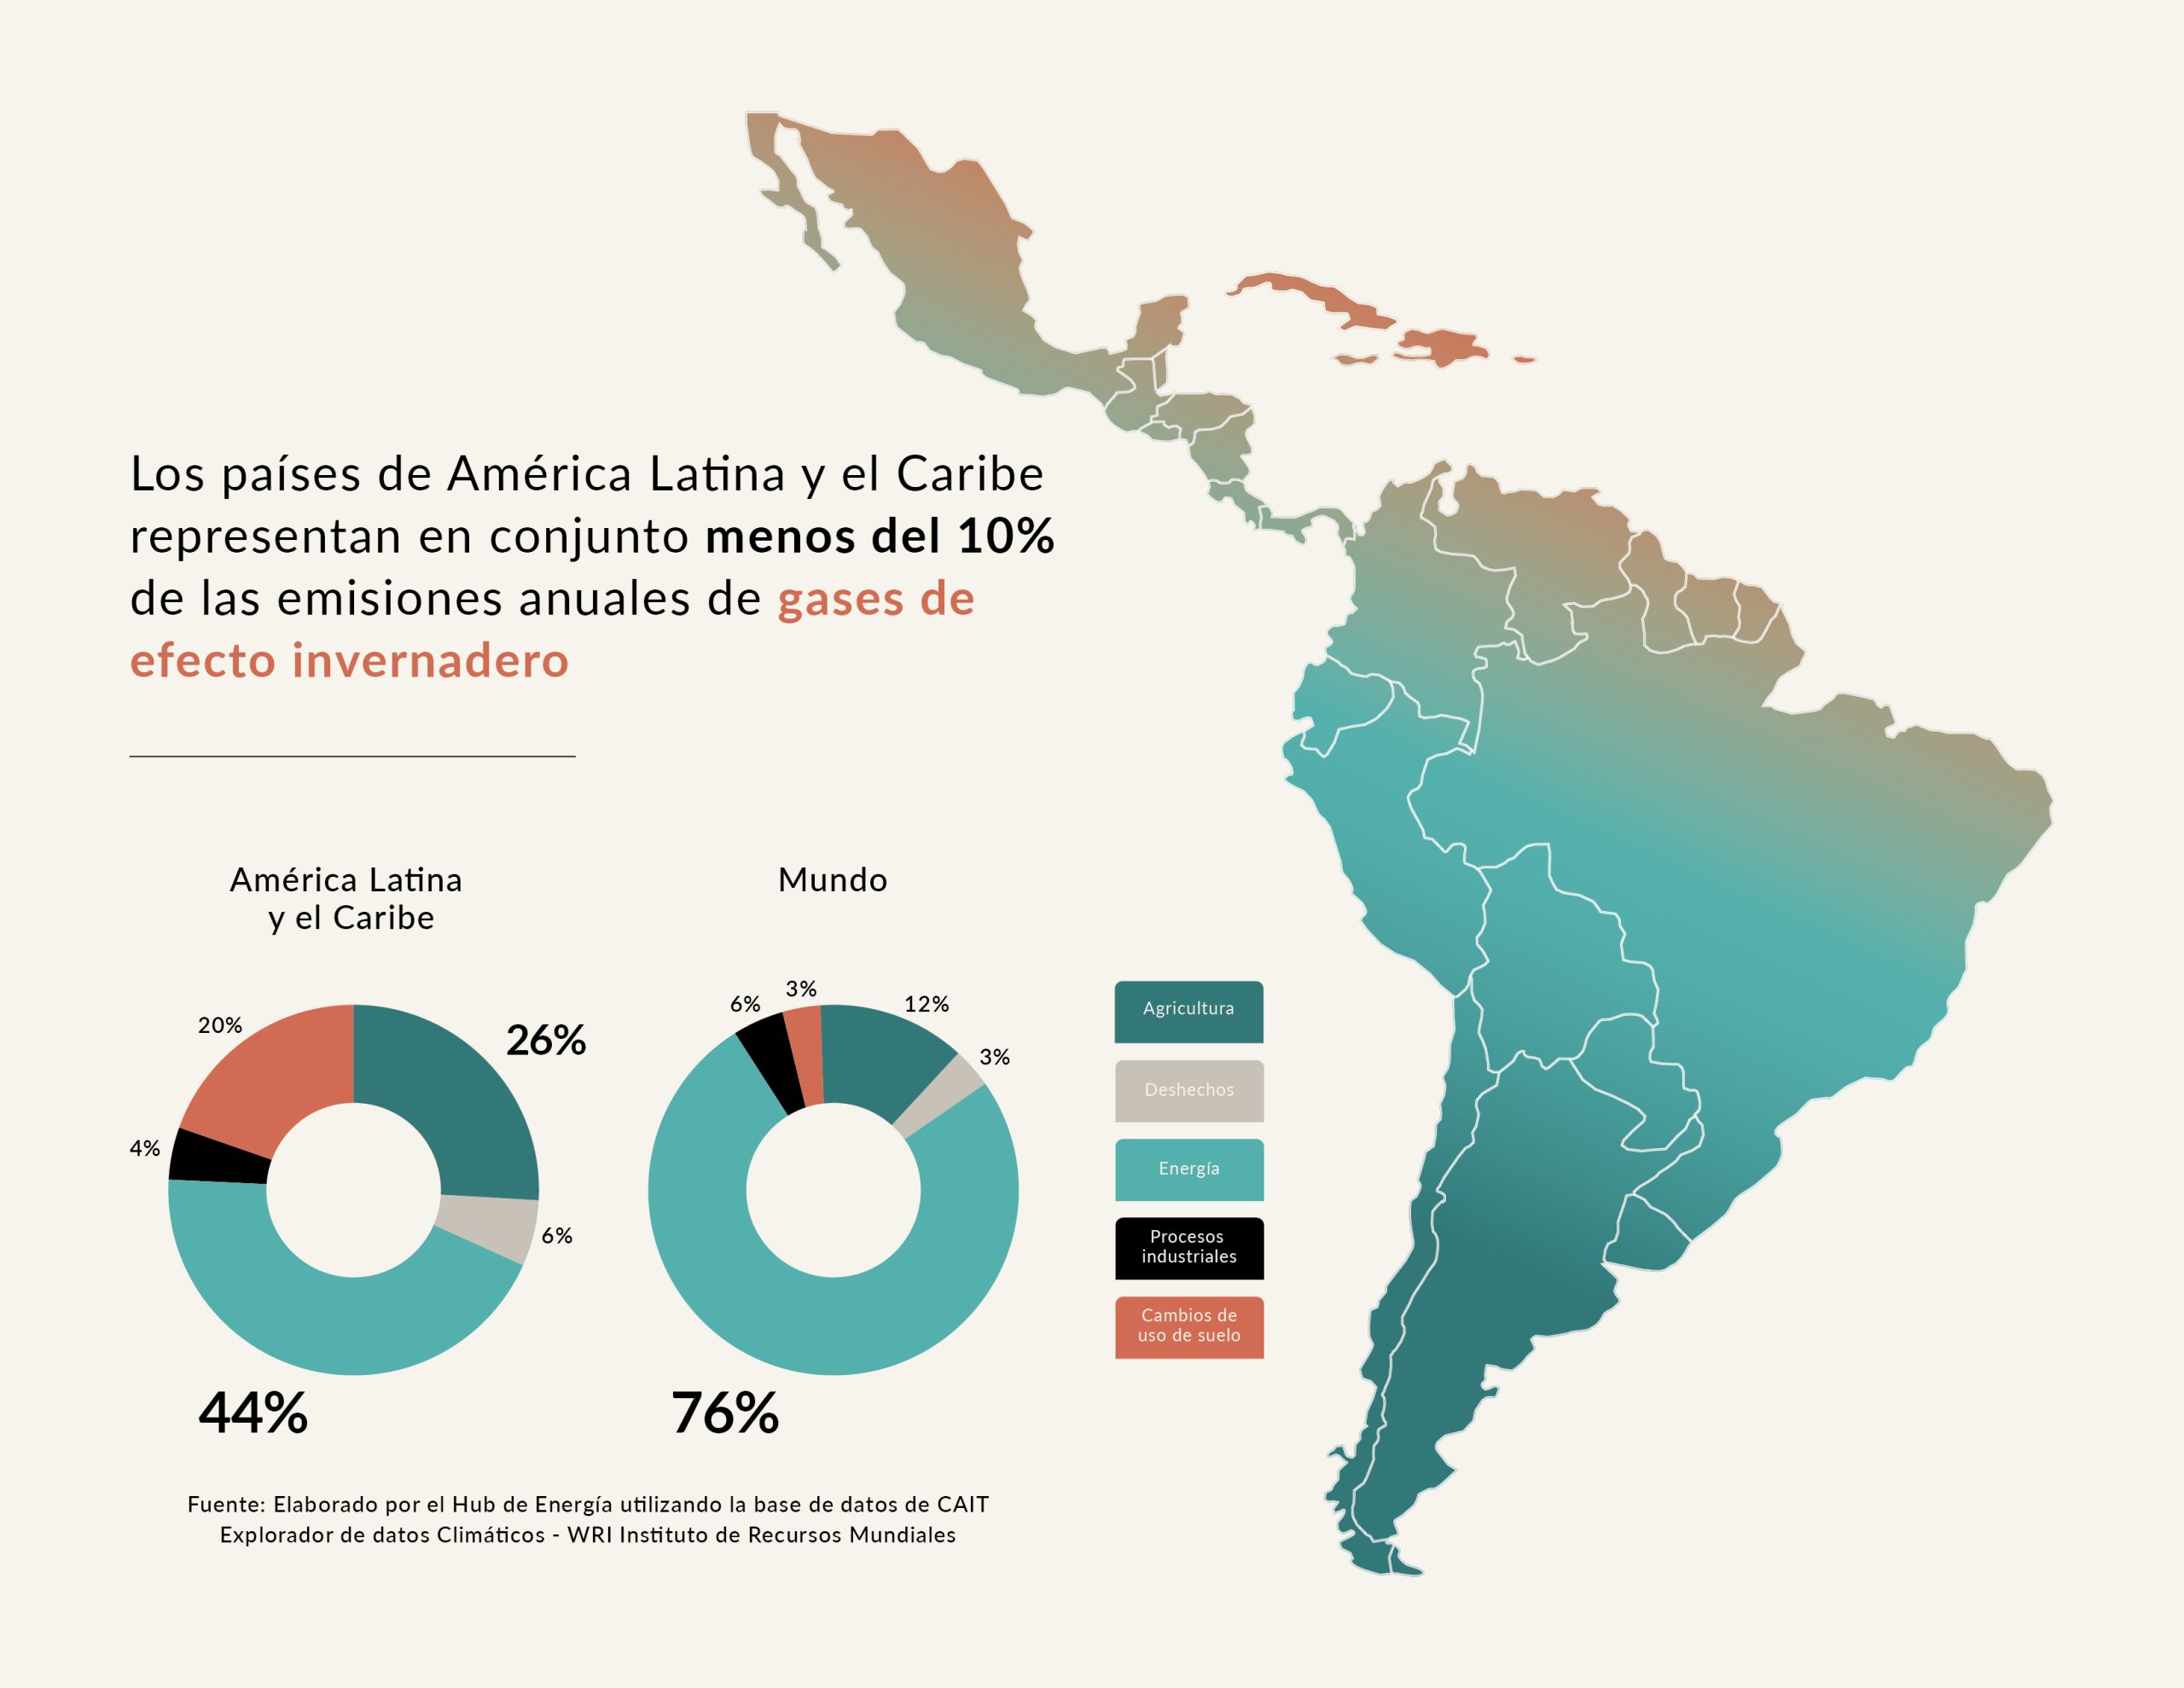 Mapa de América Latina y gráficos con las emisiones anuales de efecto invernadero